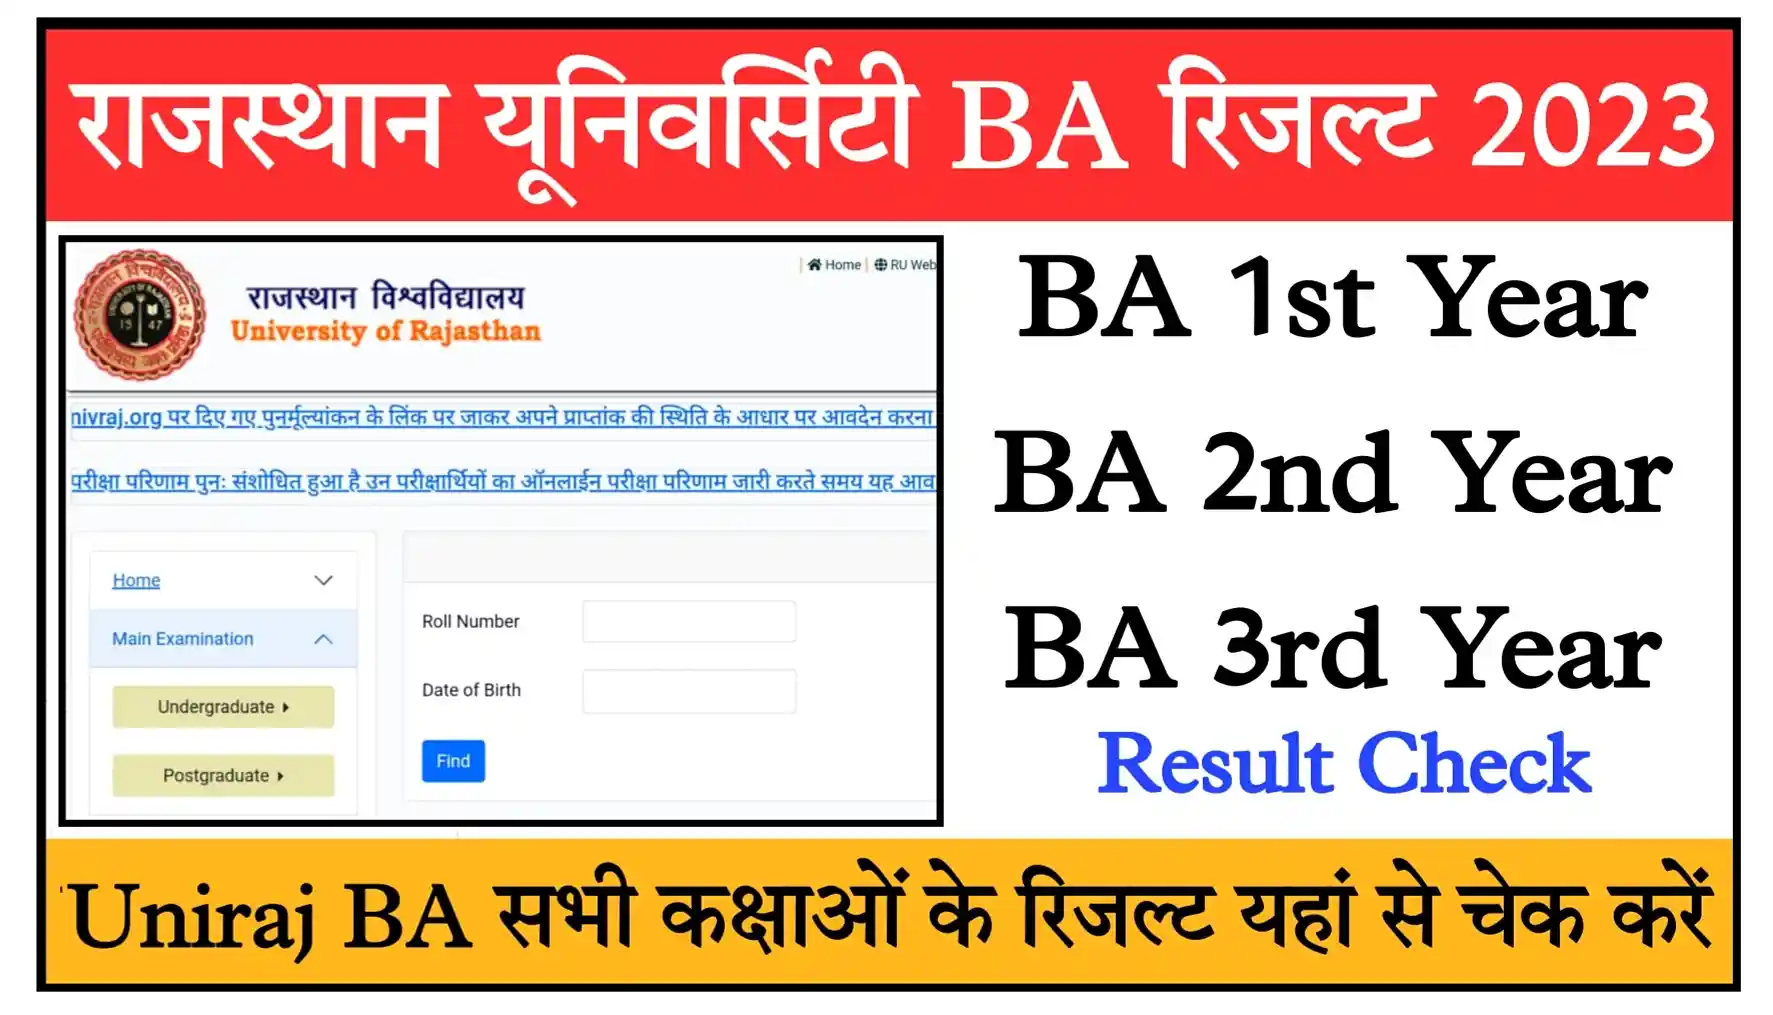 Rajasthan University BA Result 2023 Direct Link Uniraj BA 1st, 2nd, 3rd Year Result Check Link @result.uniraj.ac.in